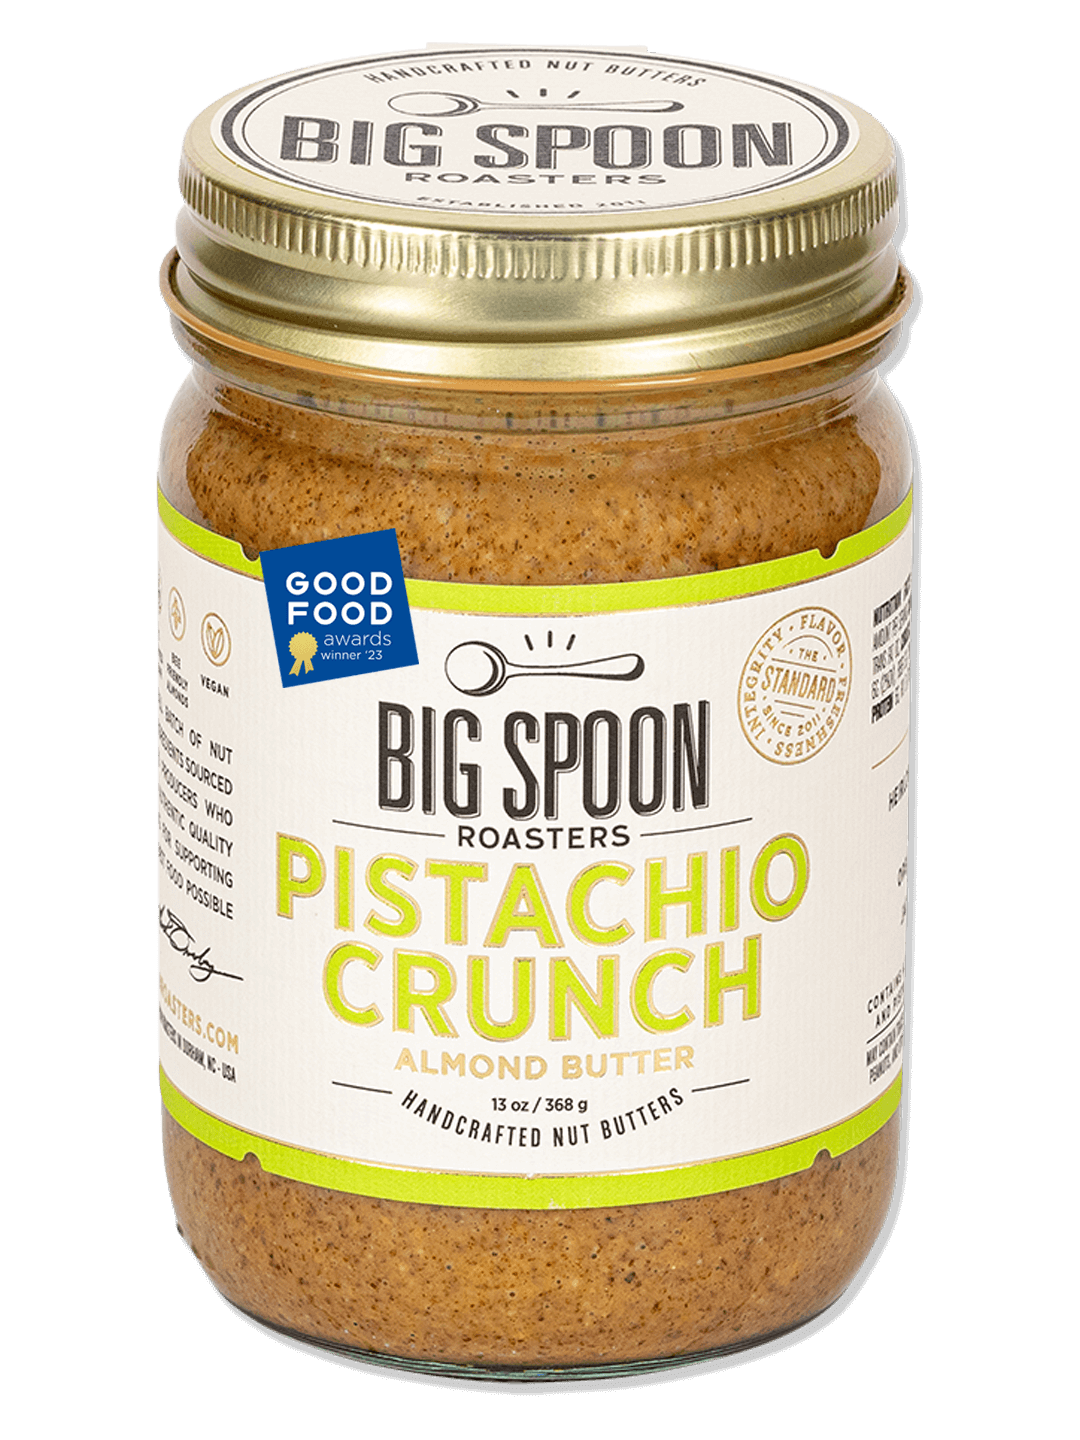 A 13 oz jar of Pistachio Crunch